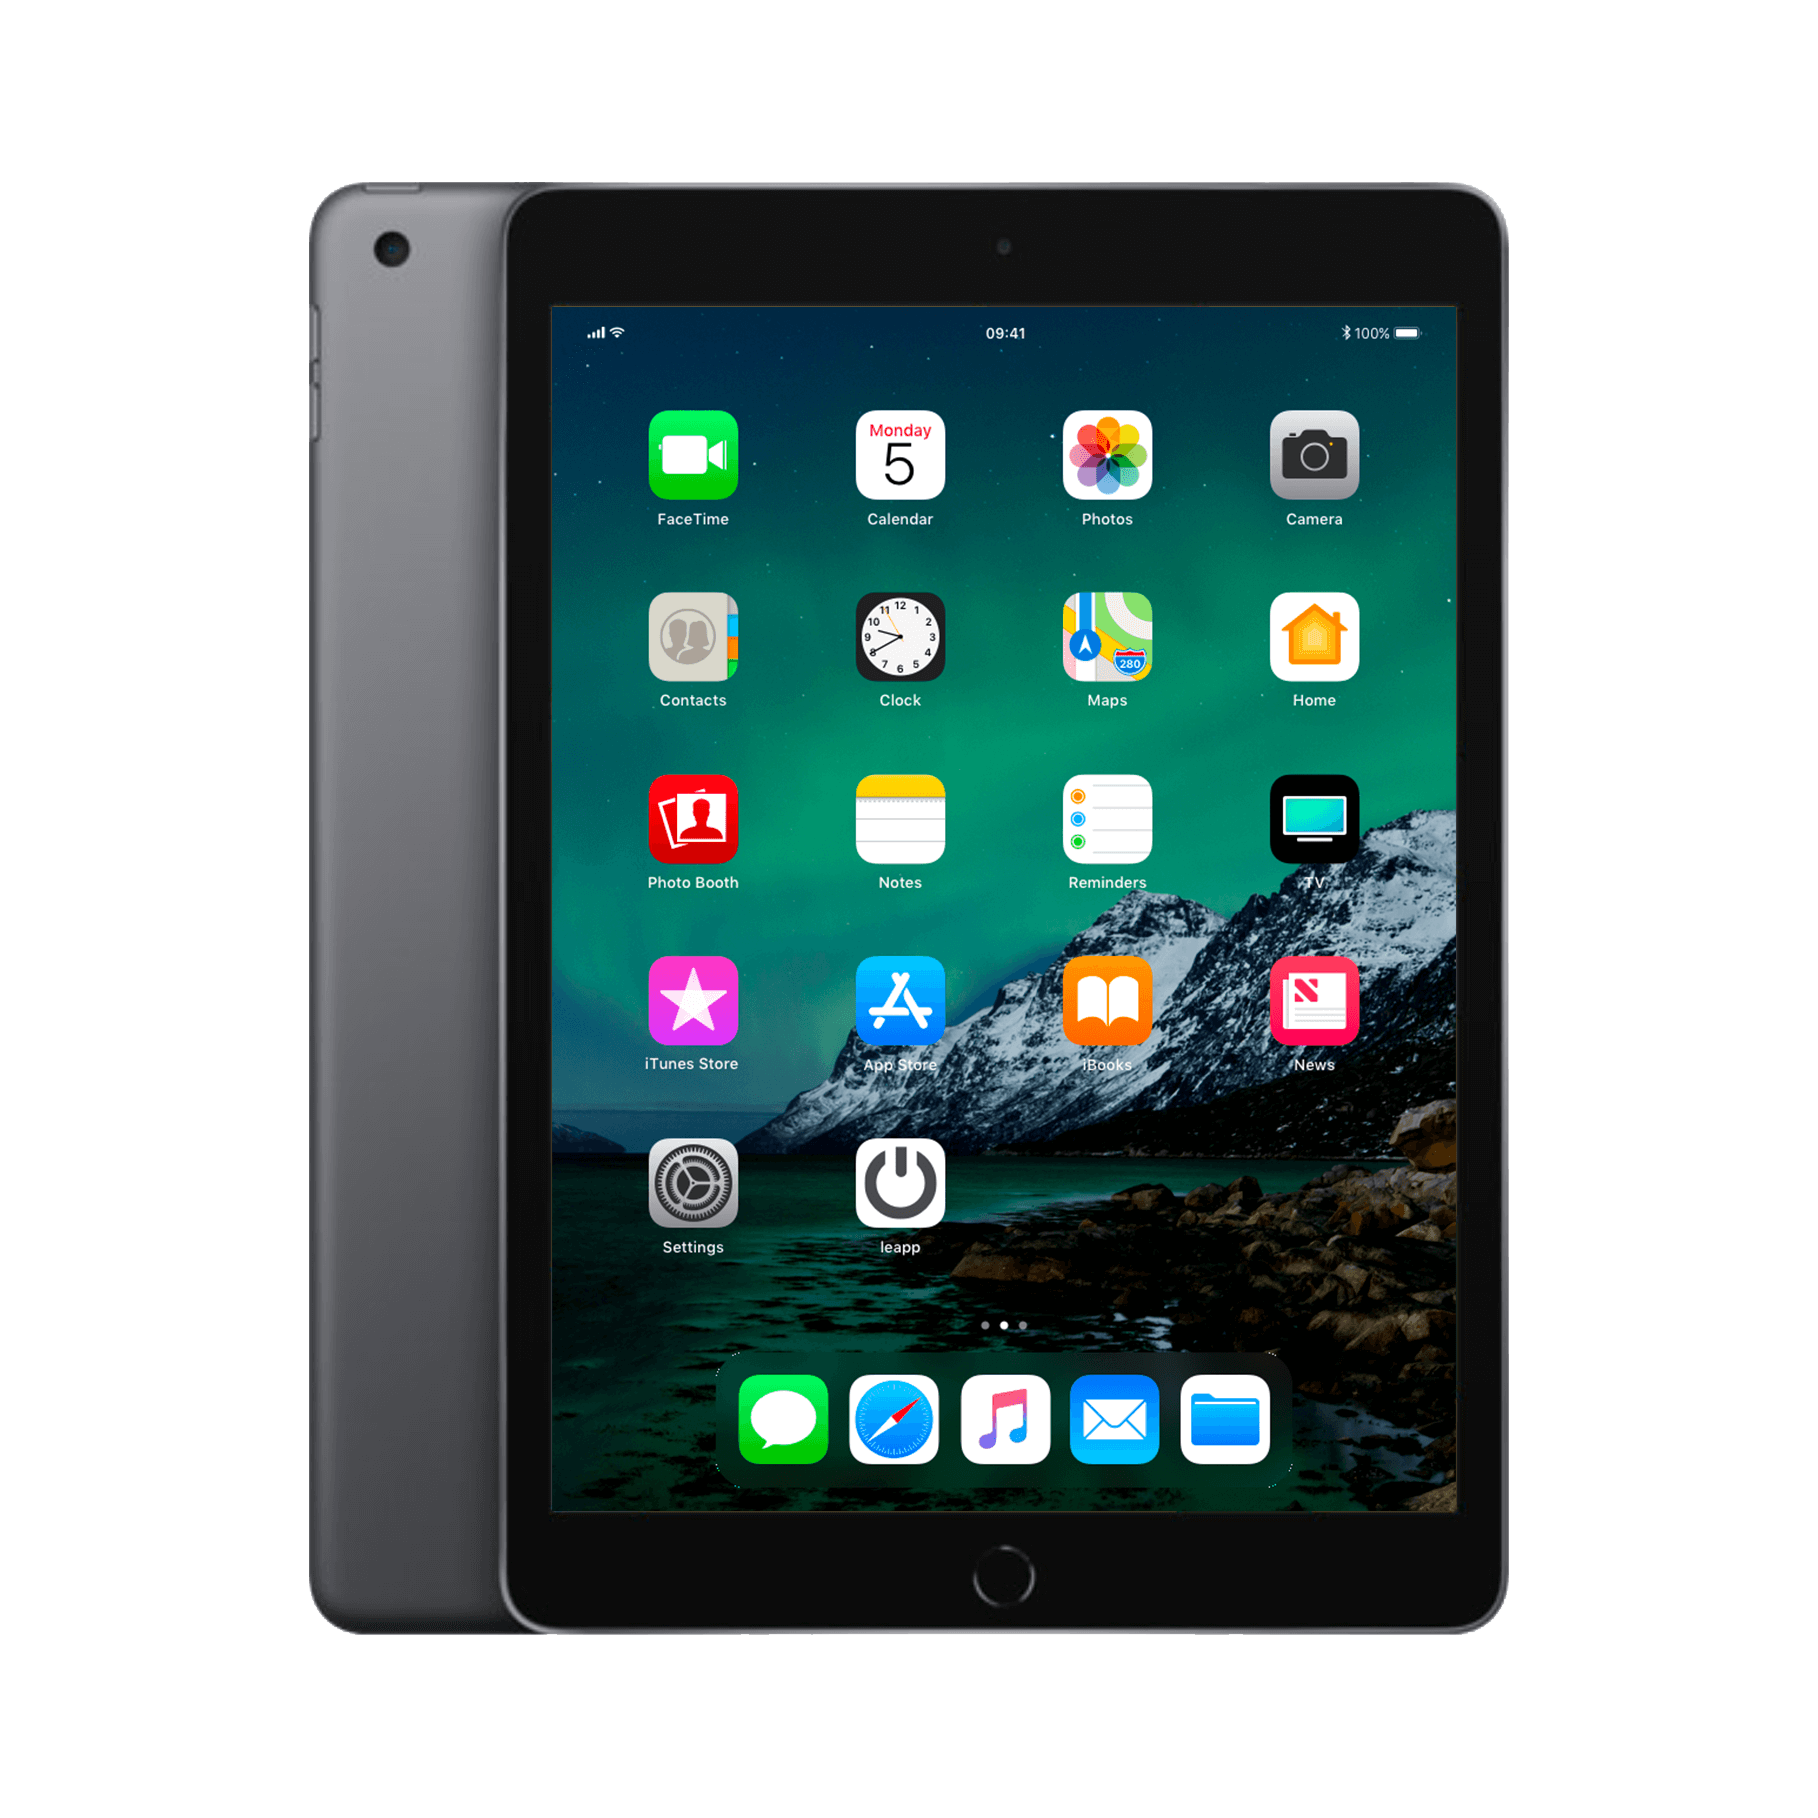 Refurbished iPad 2019 wifi 128gb